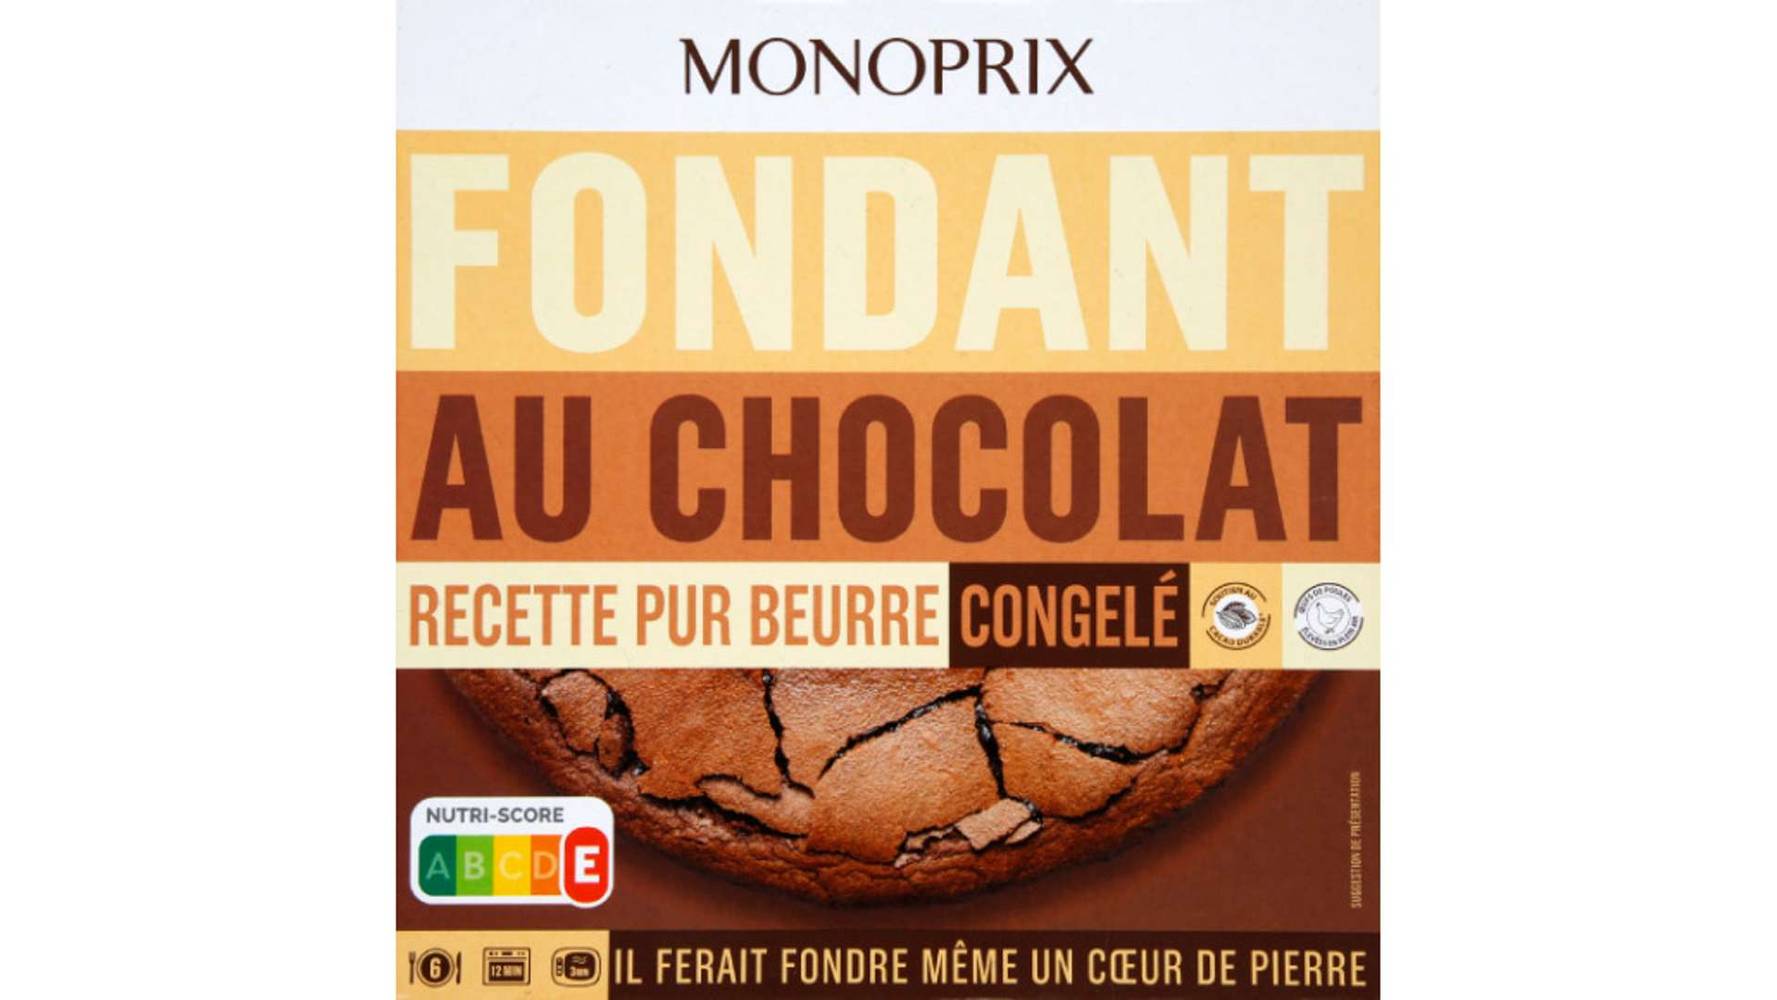 MONOPRIX Fondant au chocolat Le paquet de 450g